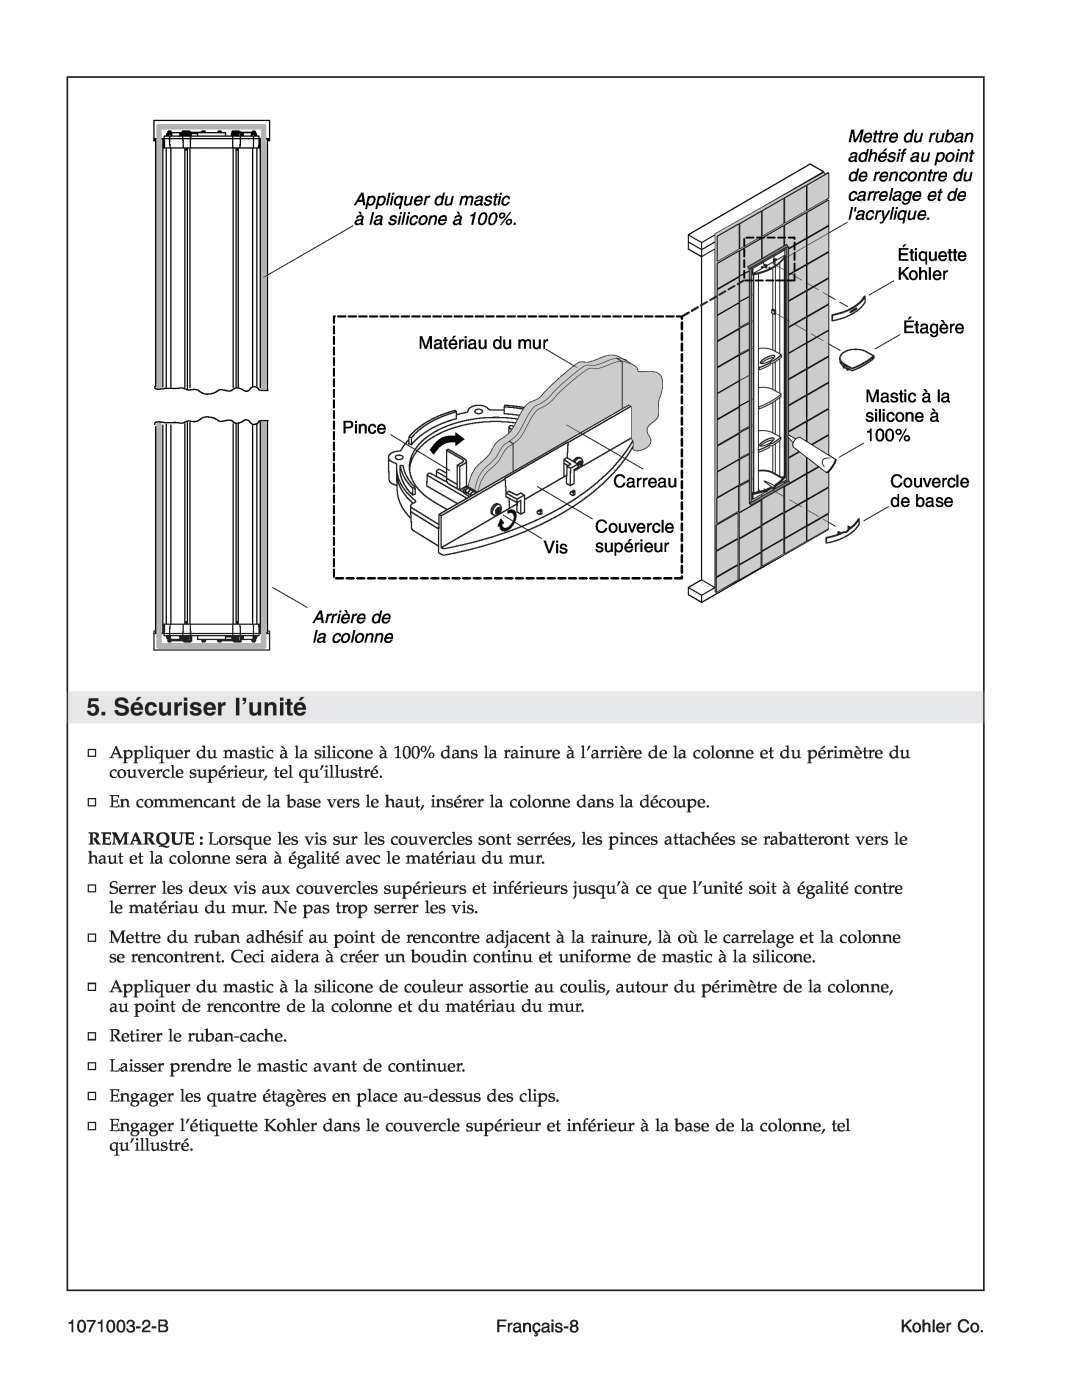 Kohler K-1840 manual 5. Sécuriser l’unité, Appliquer du mastic à la silicone à 100%, Arrière de la colonne, 1071003-2-B 